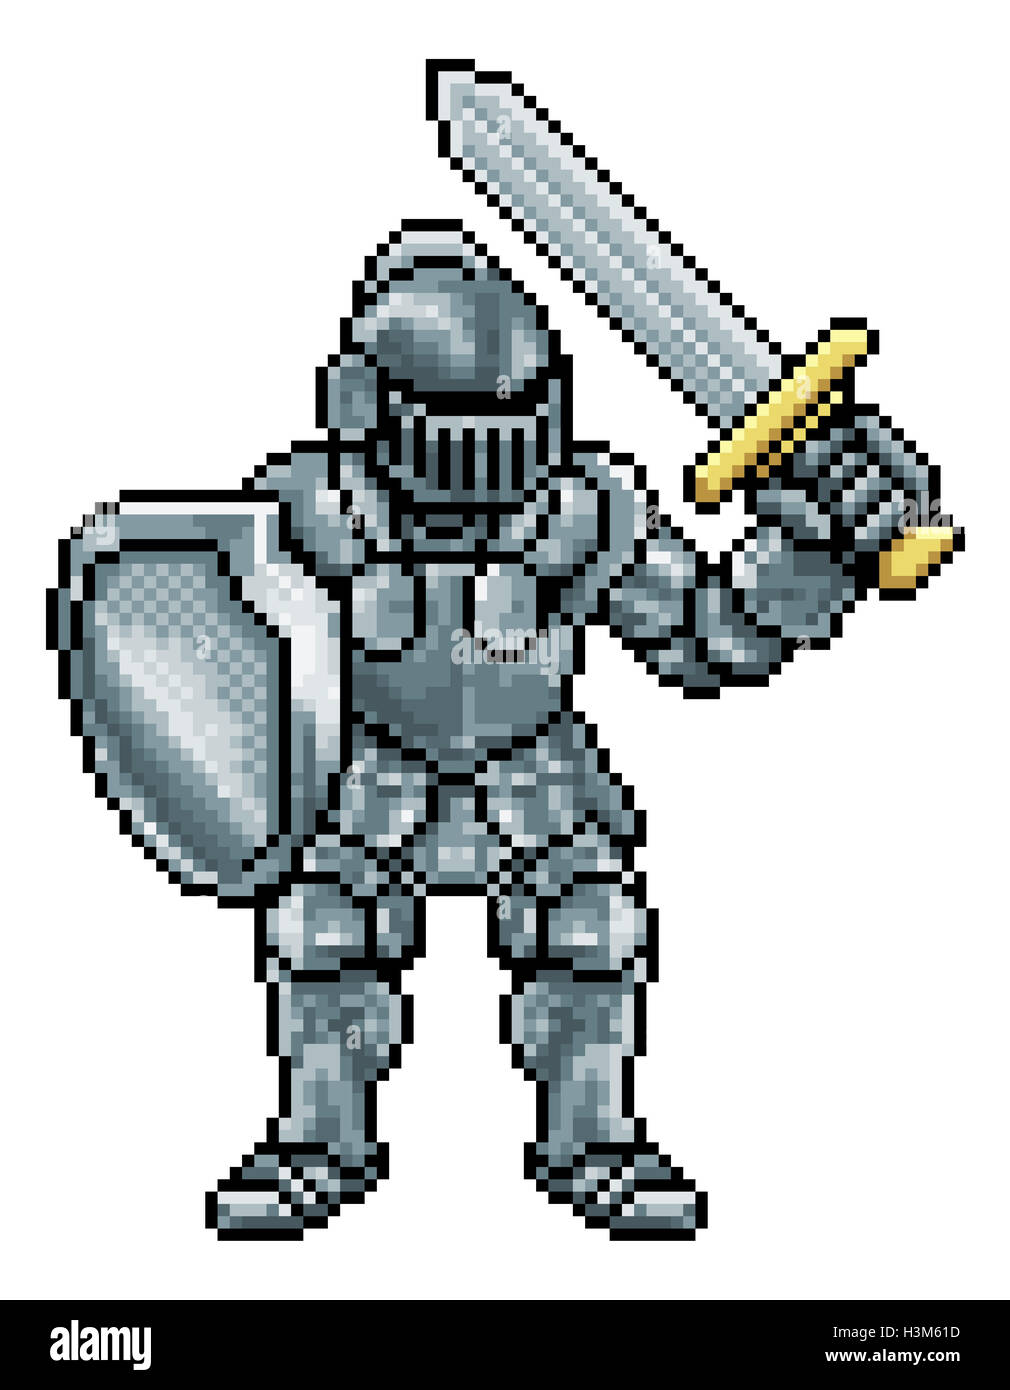 Knight personnage en pixel art style dans son armure tenant une épée et un bouclier Banque D'Images